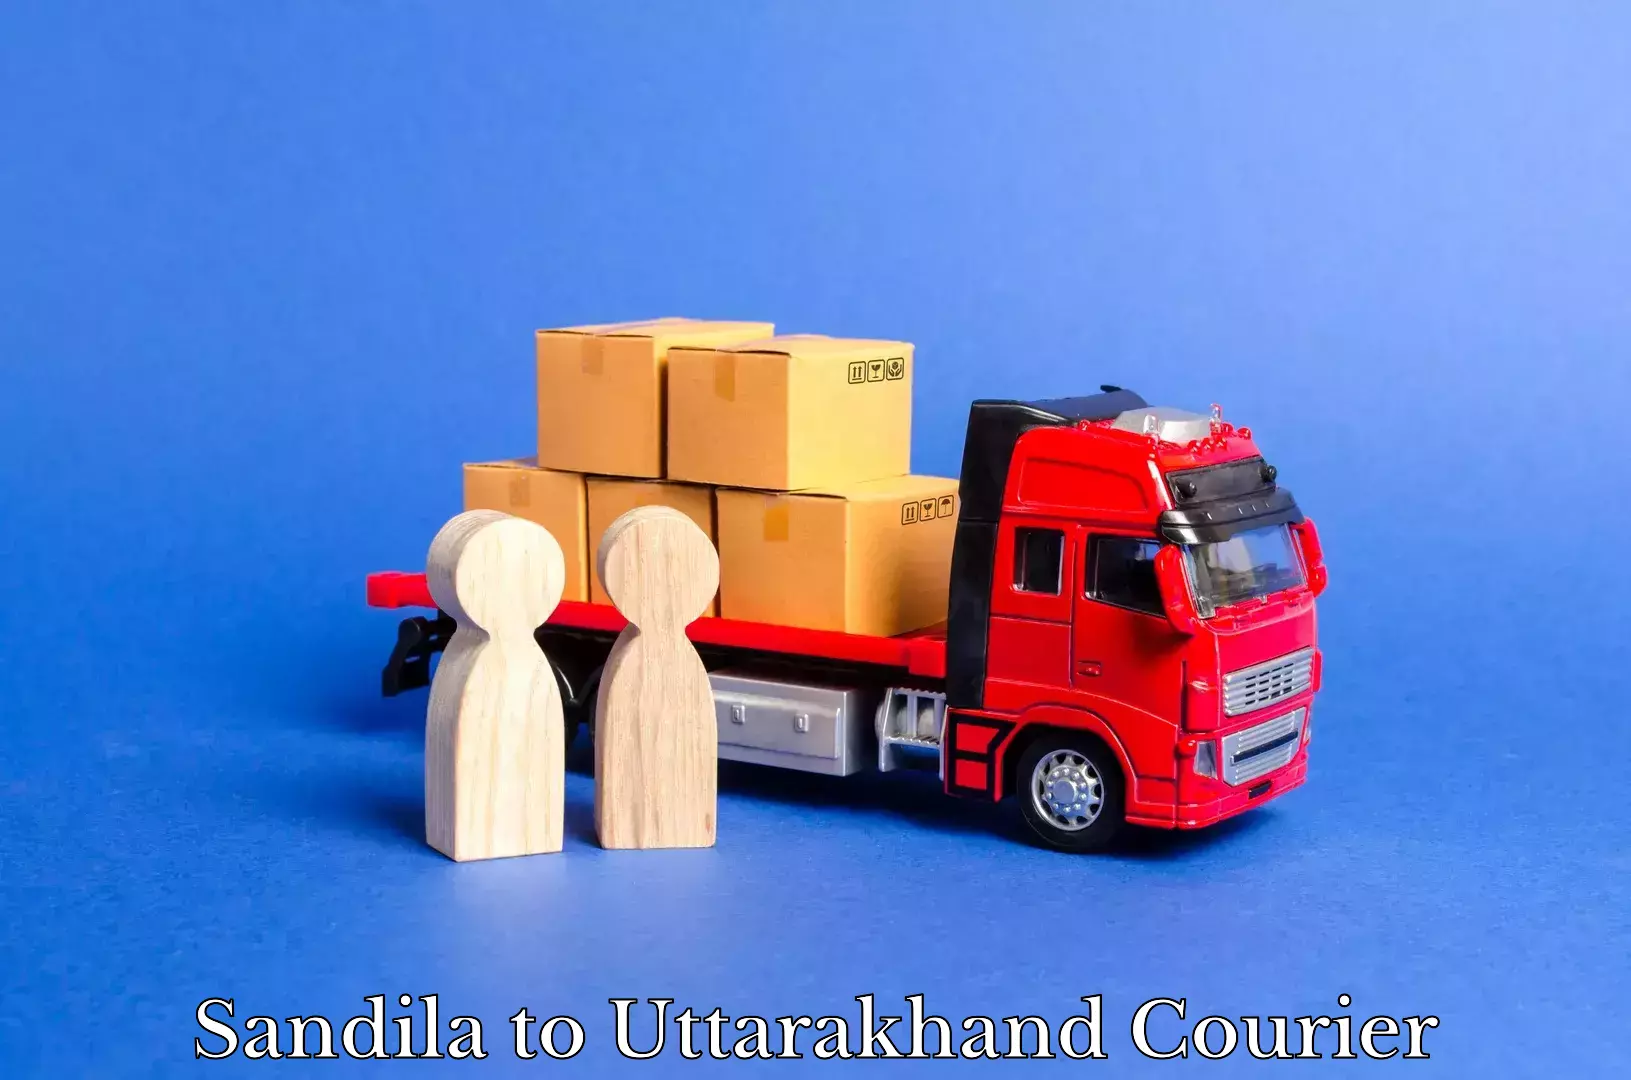 Specialized shipment handling in Sandila to Uttarakhand